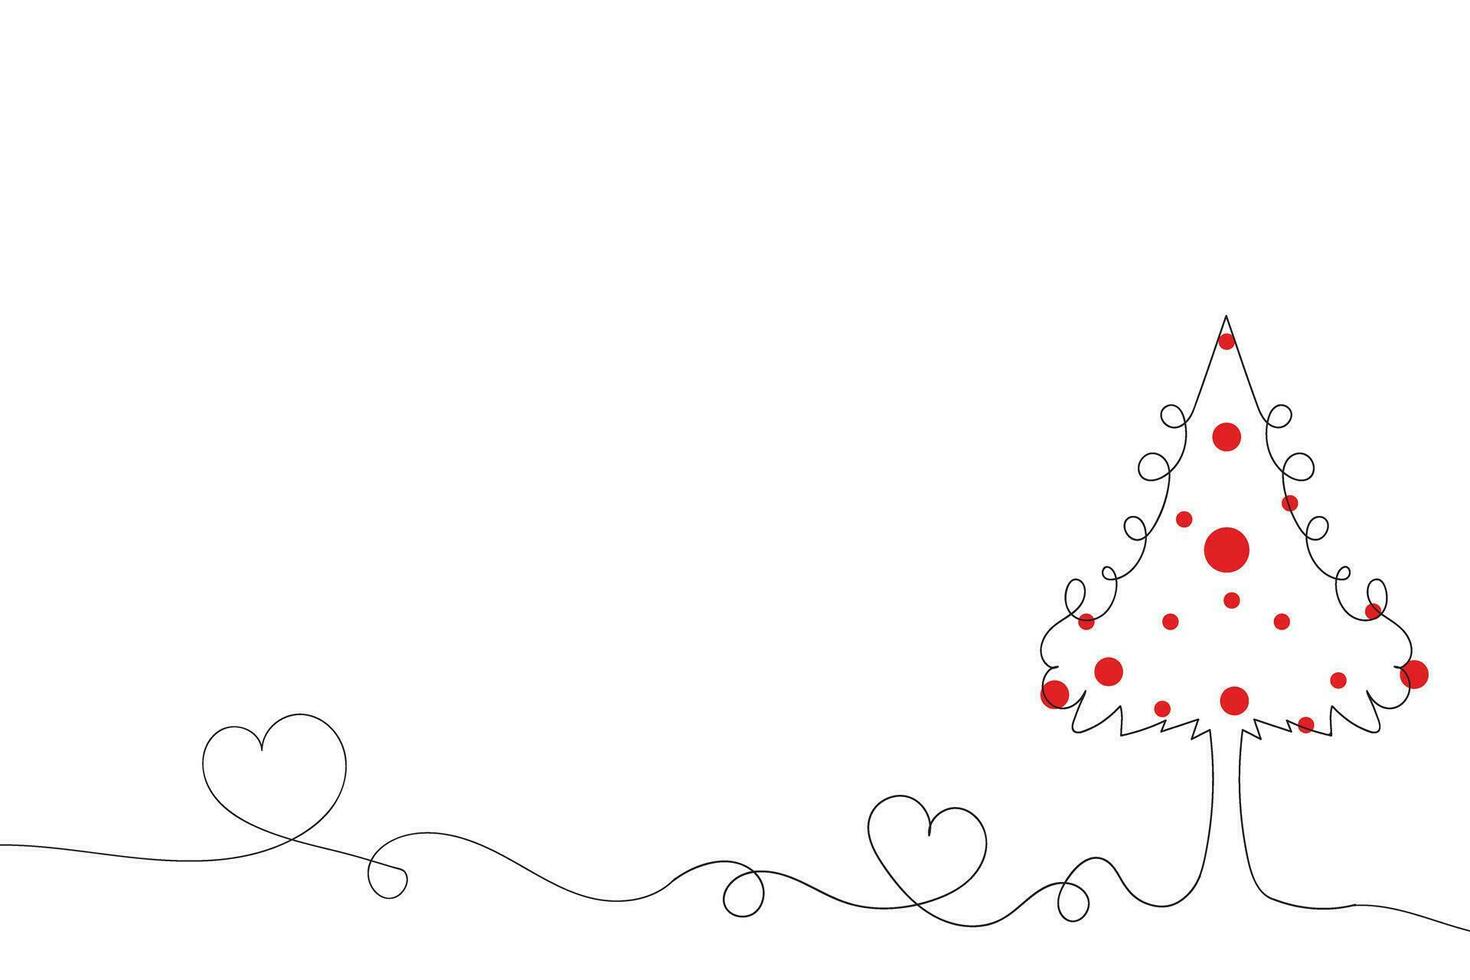 mano disegnato magro continuo linea Natale albero con cuori simbolo vettore, uno linea pino abete albero romantico relazione amore cartello, minimalista schema singolo linea arte vacanza carte decorazioni vettore